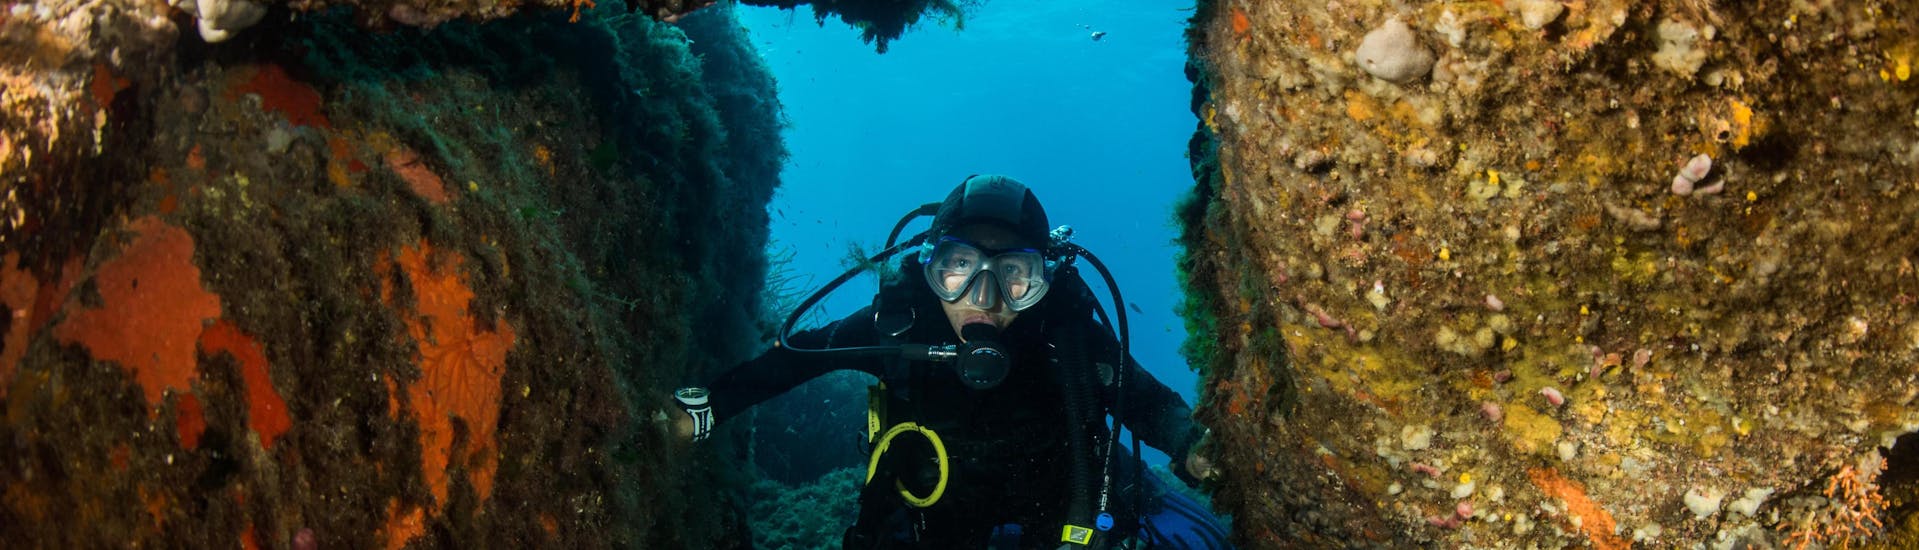 Un plongeur profite des fonds marins en Corse du Sud pendant une excursion de plongée.